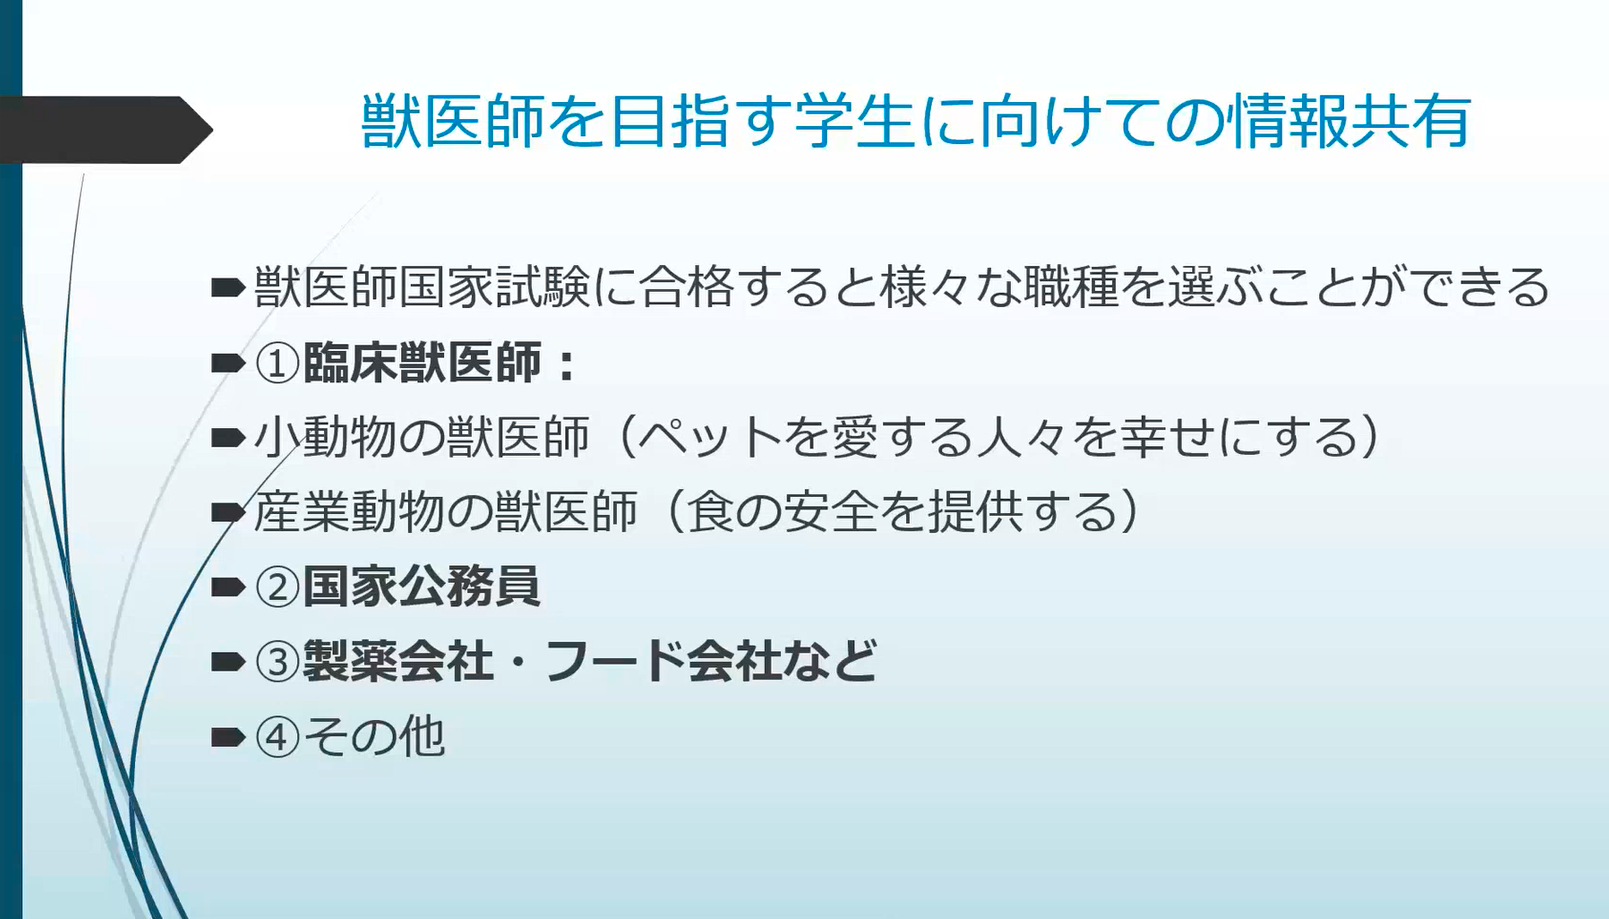 605-japan-local-ca-vet-online-seminar-report-slide1